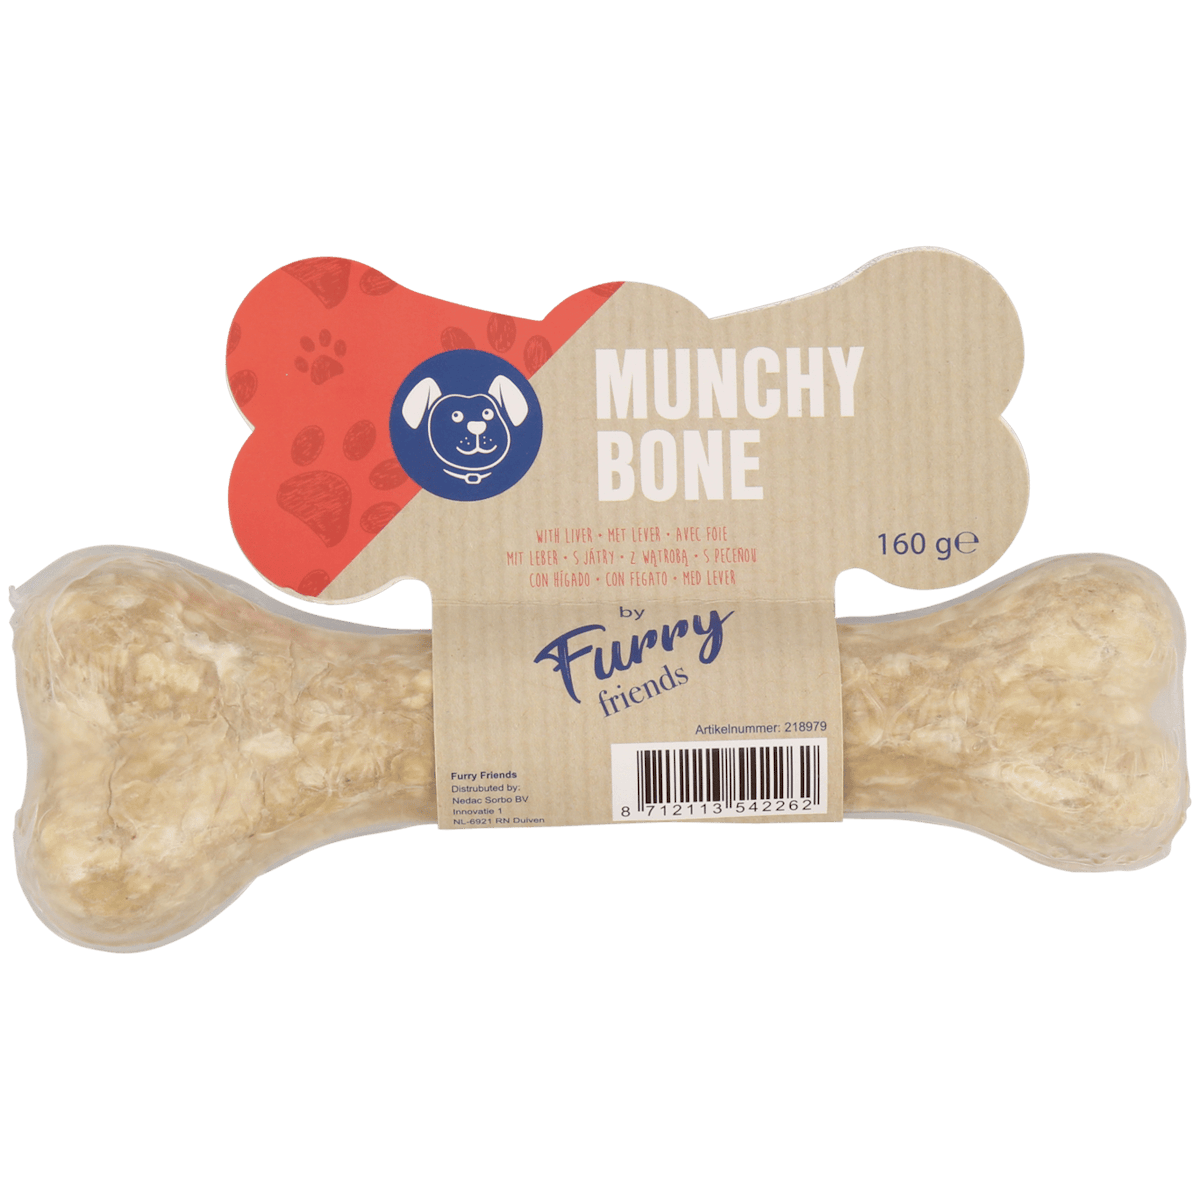 Munchy Knochen